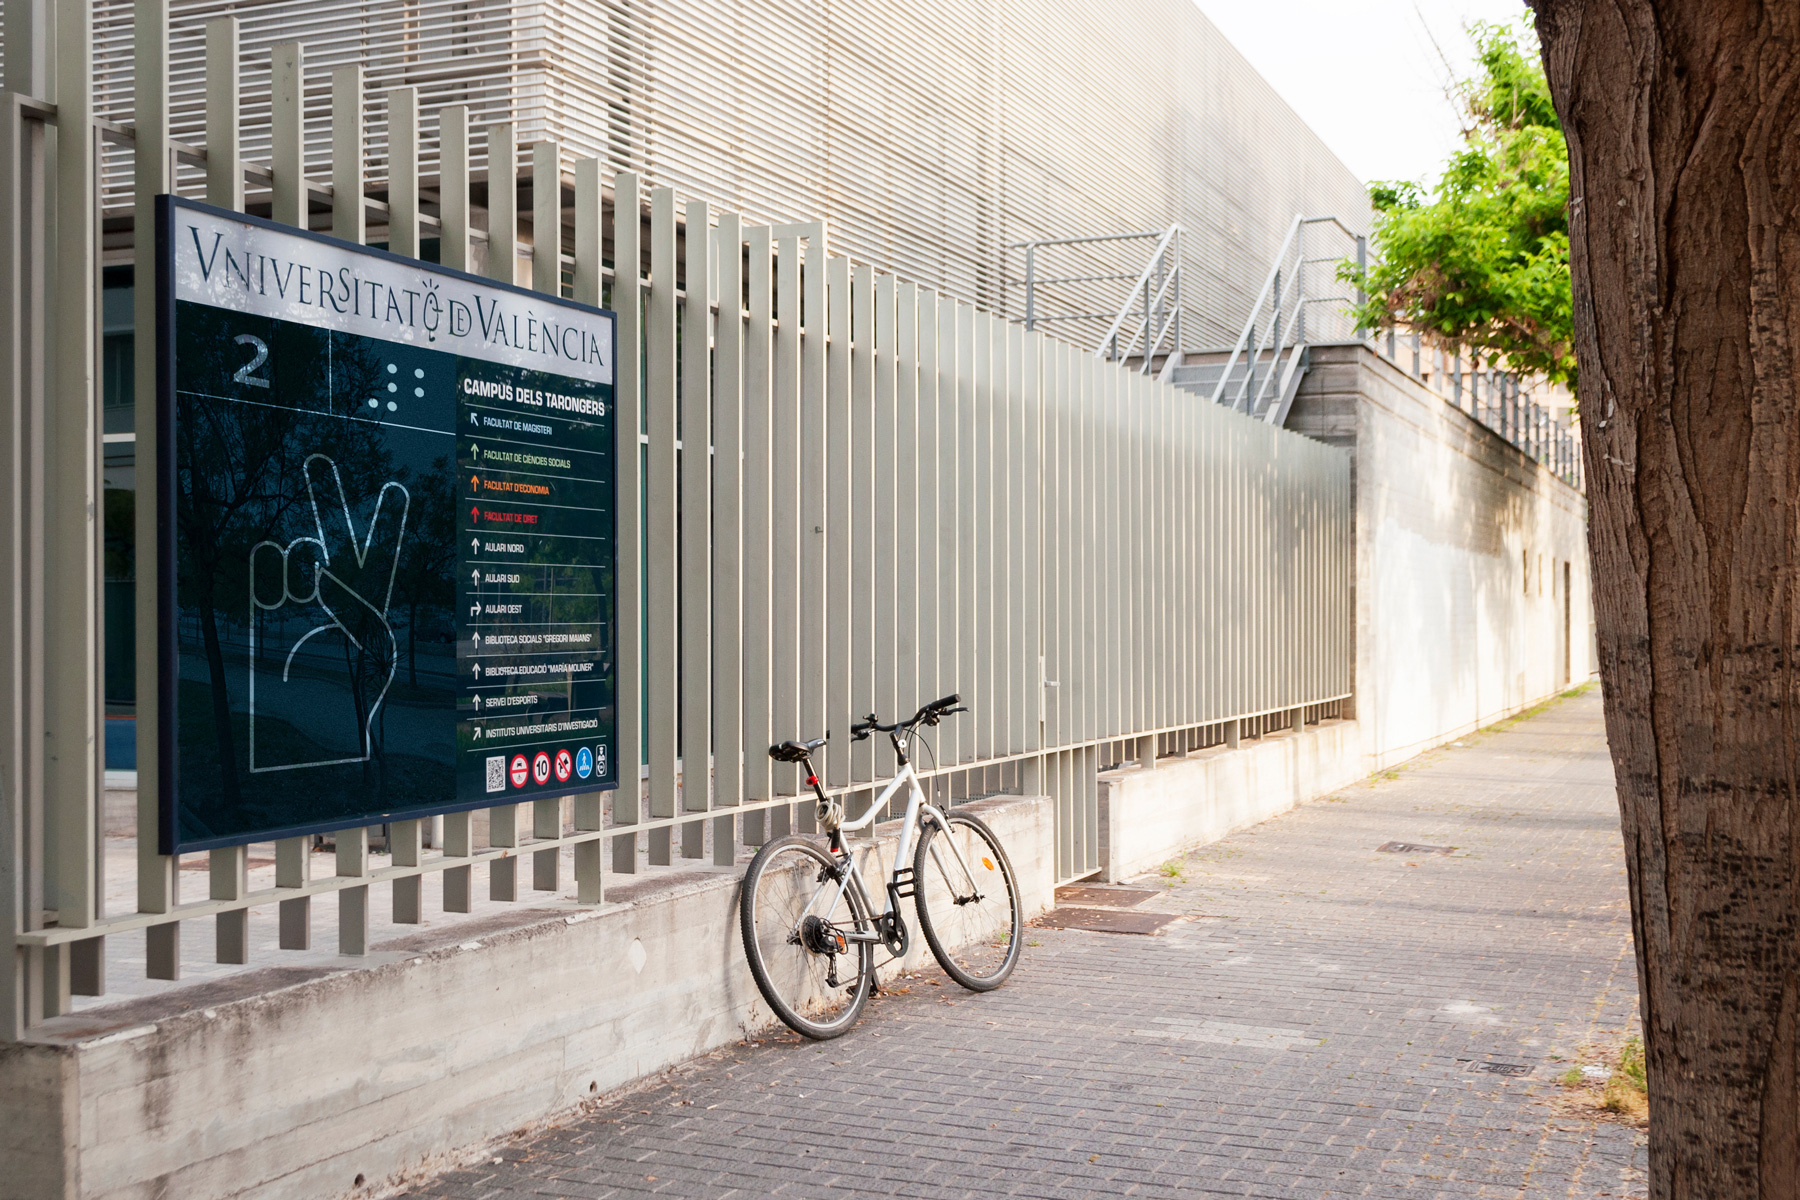 Fotografía de una de las puertas de acceso a la Universidad de València